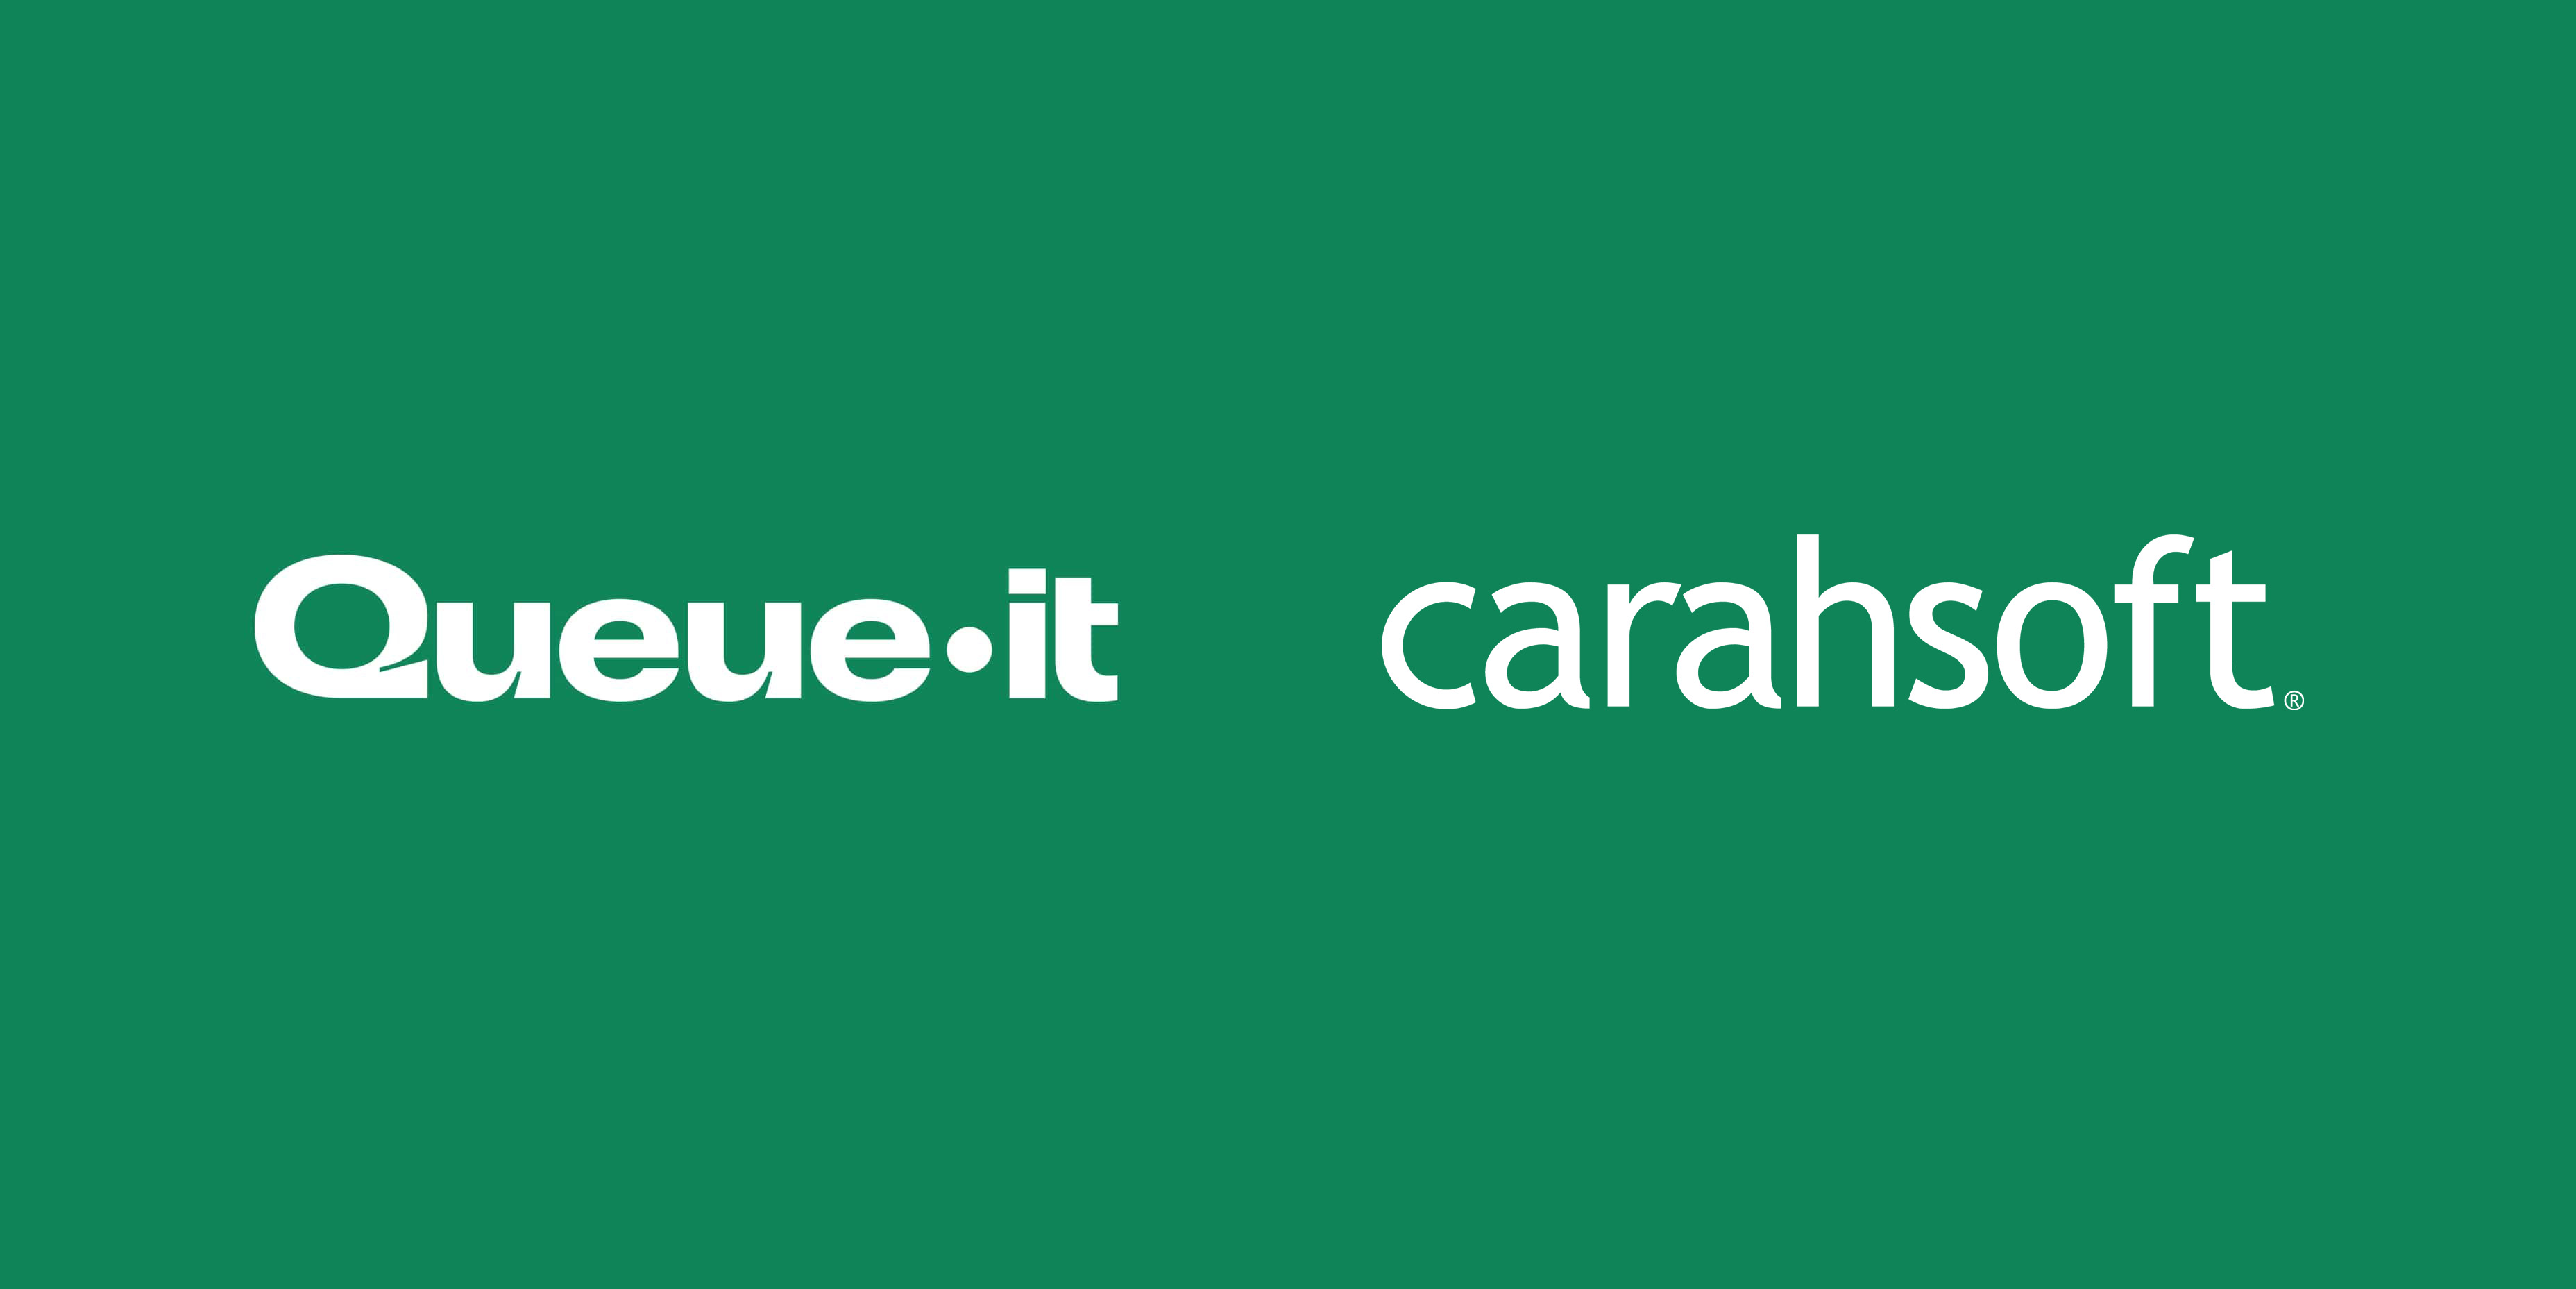 Queue-it Carahsoft logos partnership